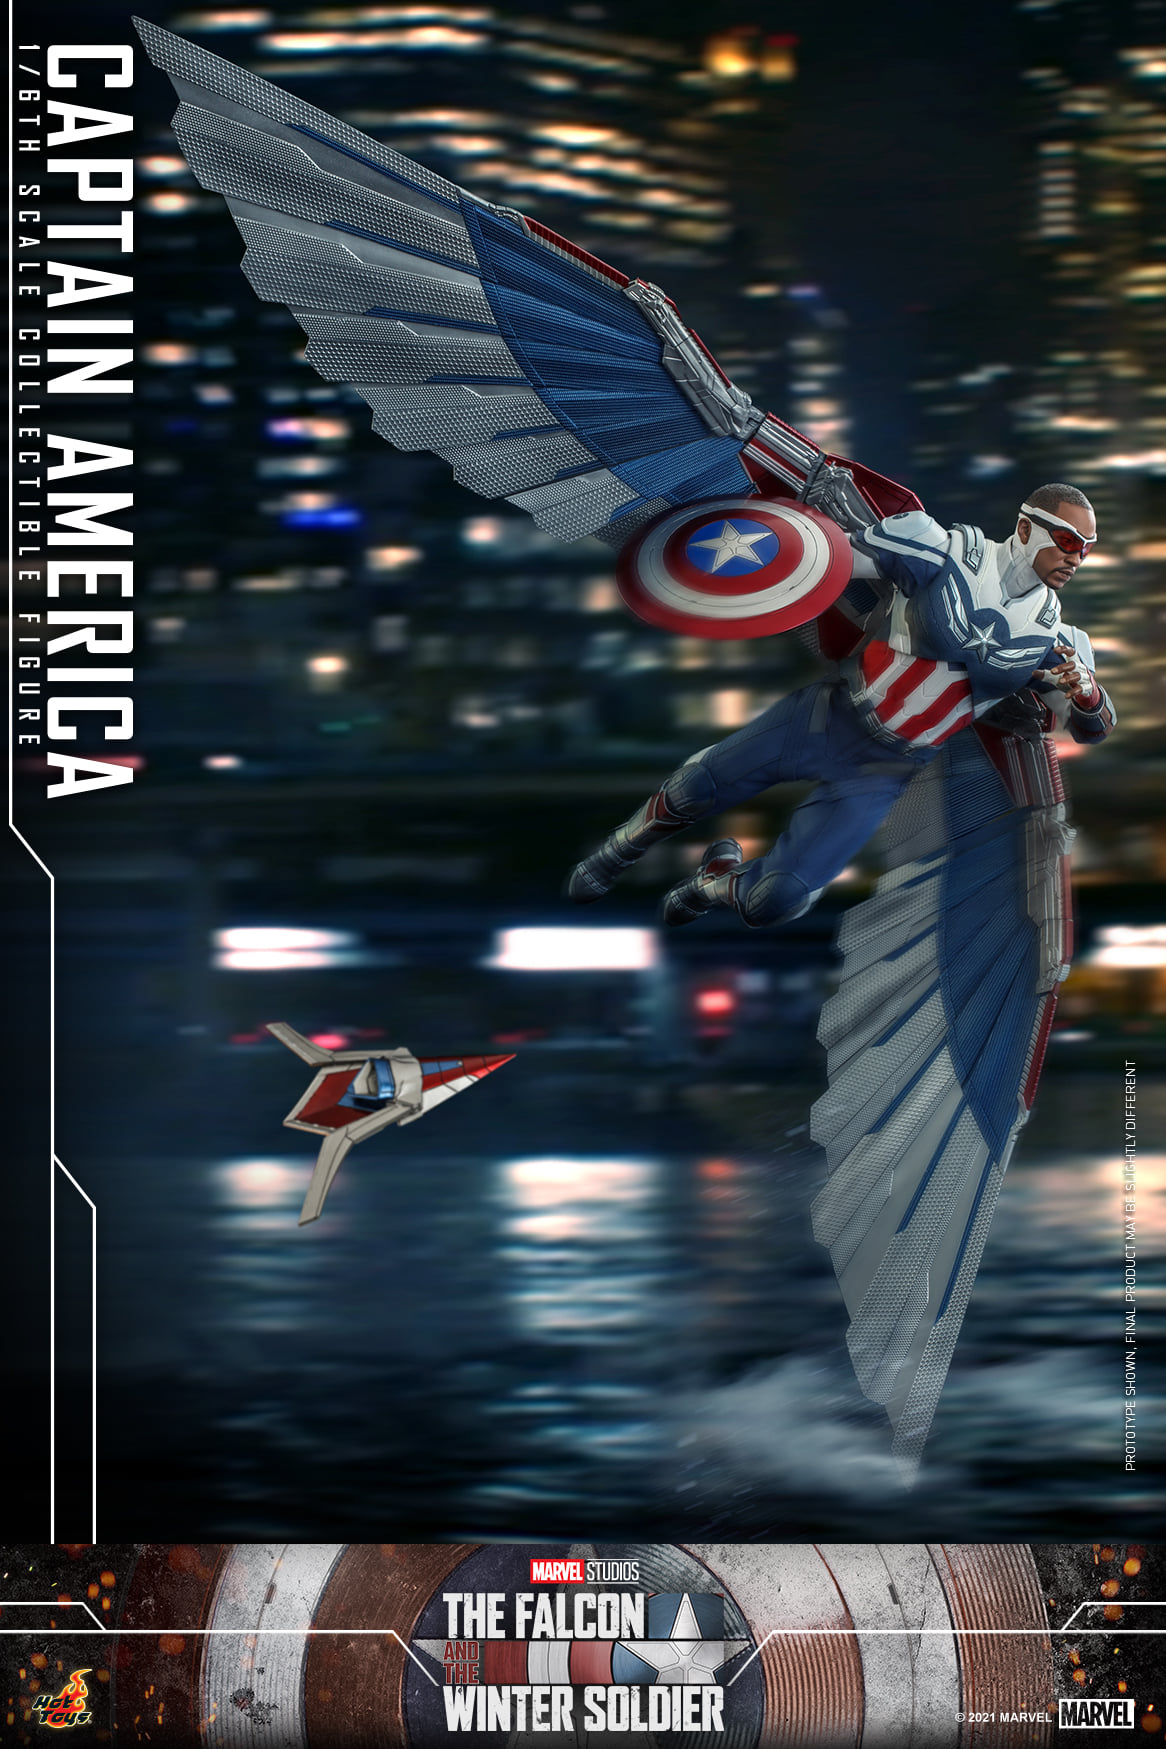 Captain America 12